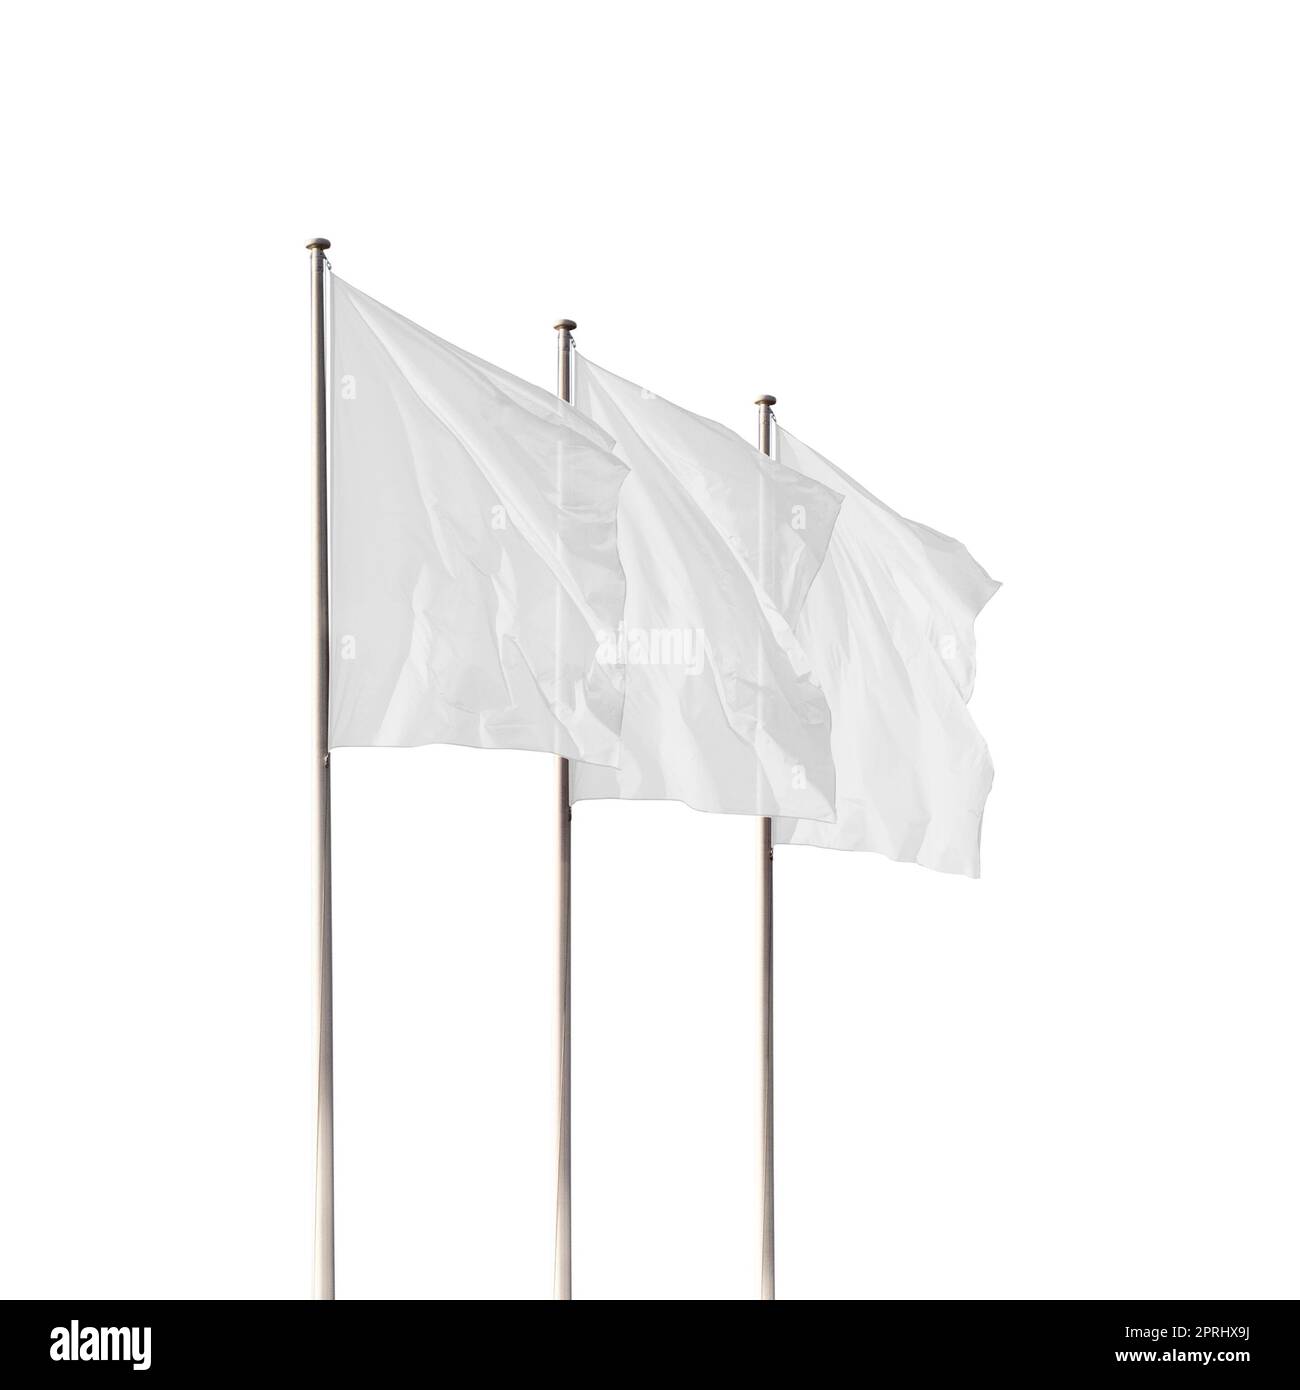 Tre bandiere bianche vuote che ondeggiano nel vento isolato. Il mockup perfetto per aggiungere qualsiasi logo, simbolo o segno Foto Stock